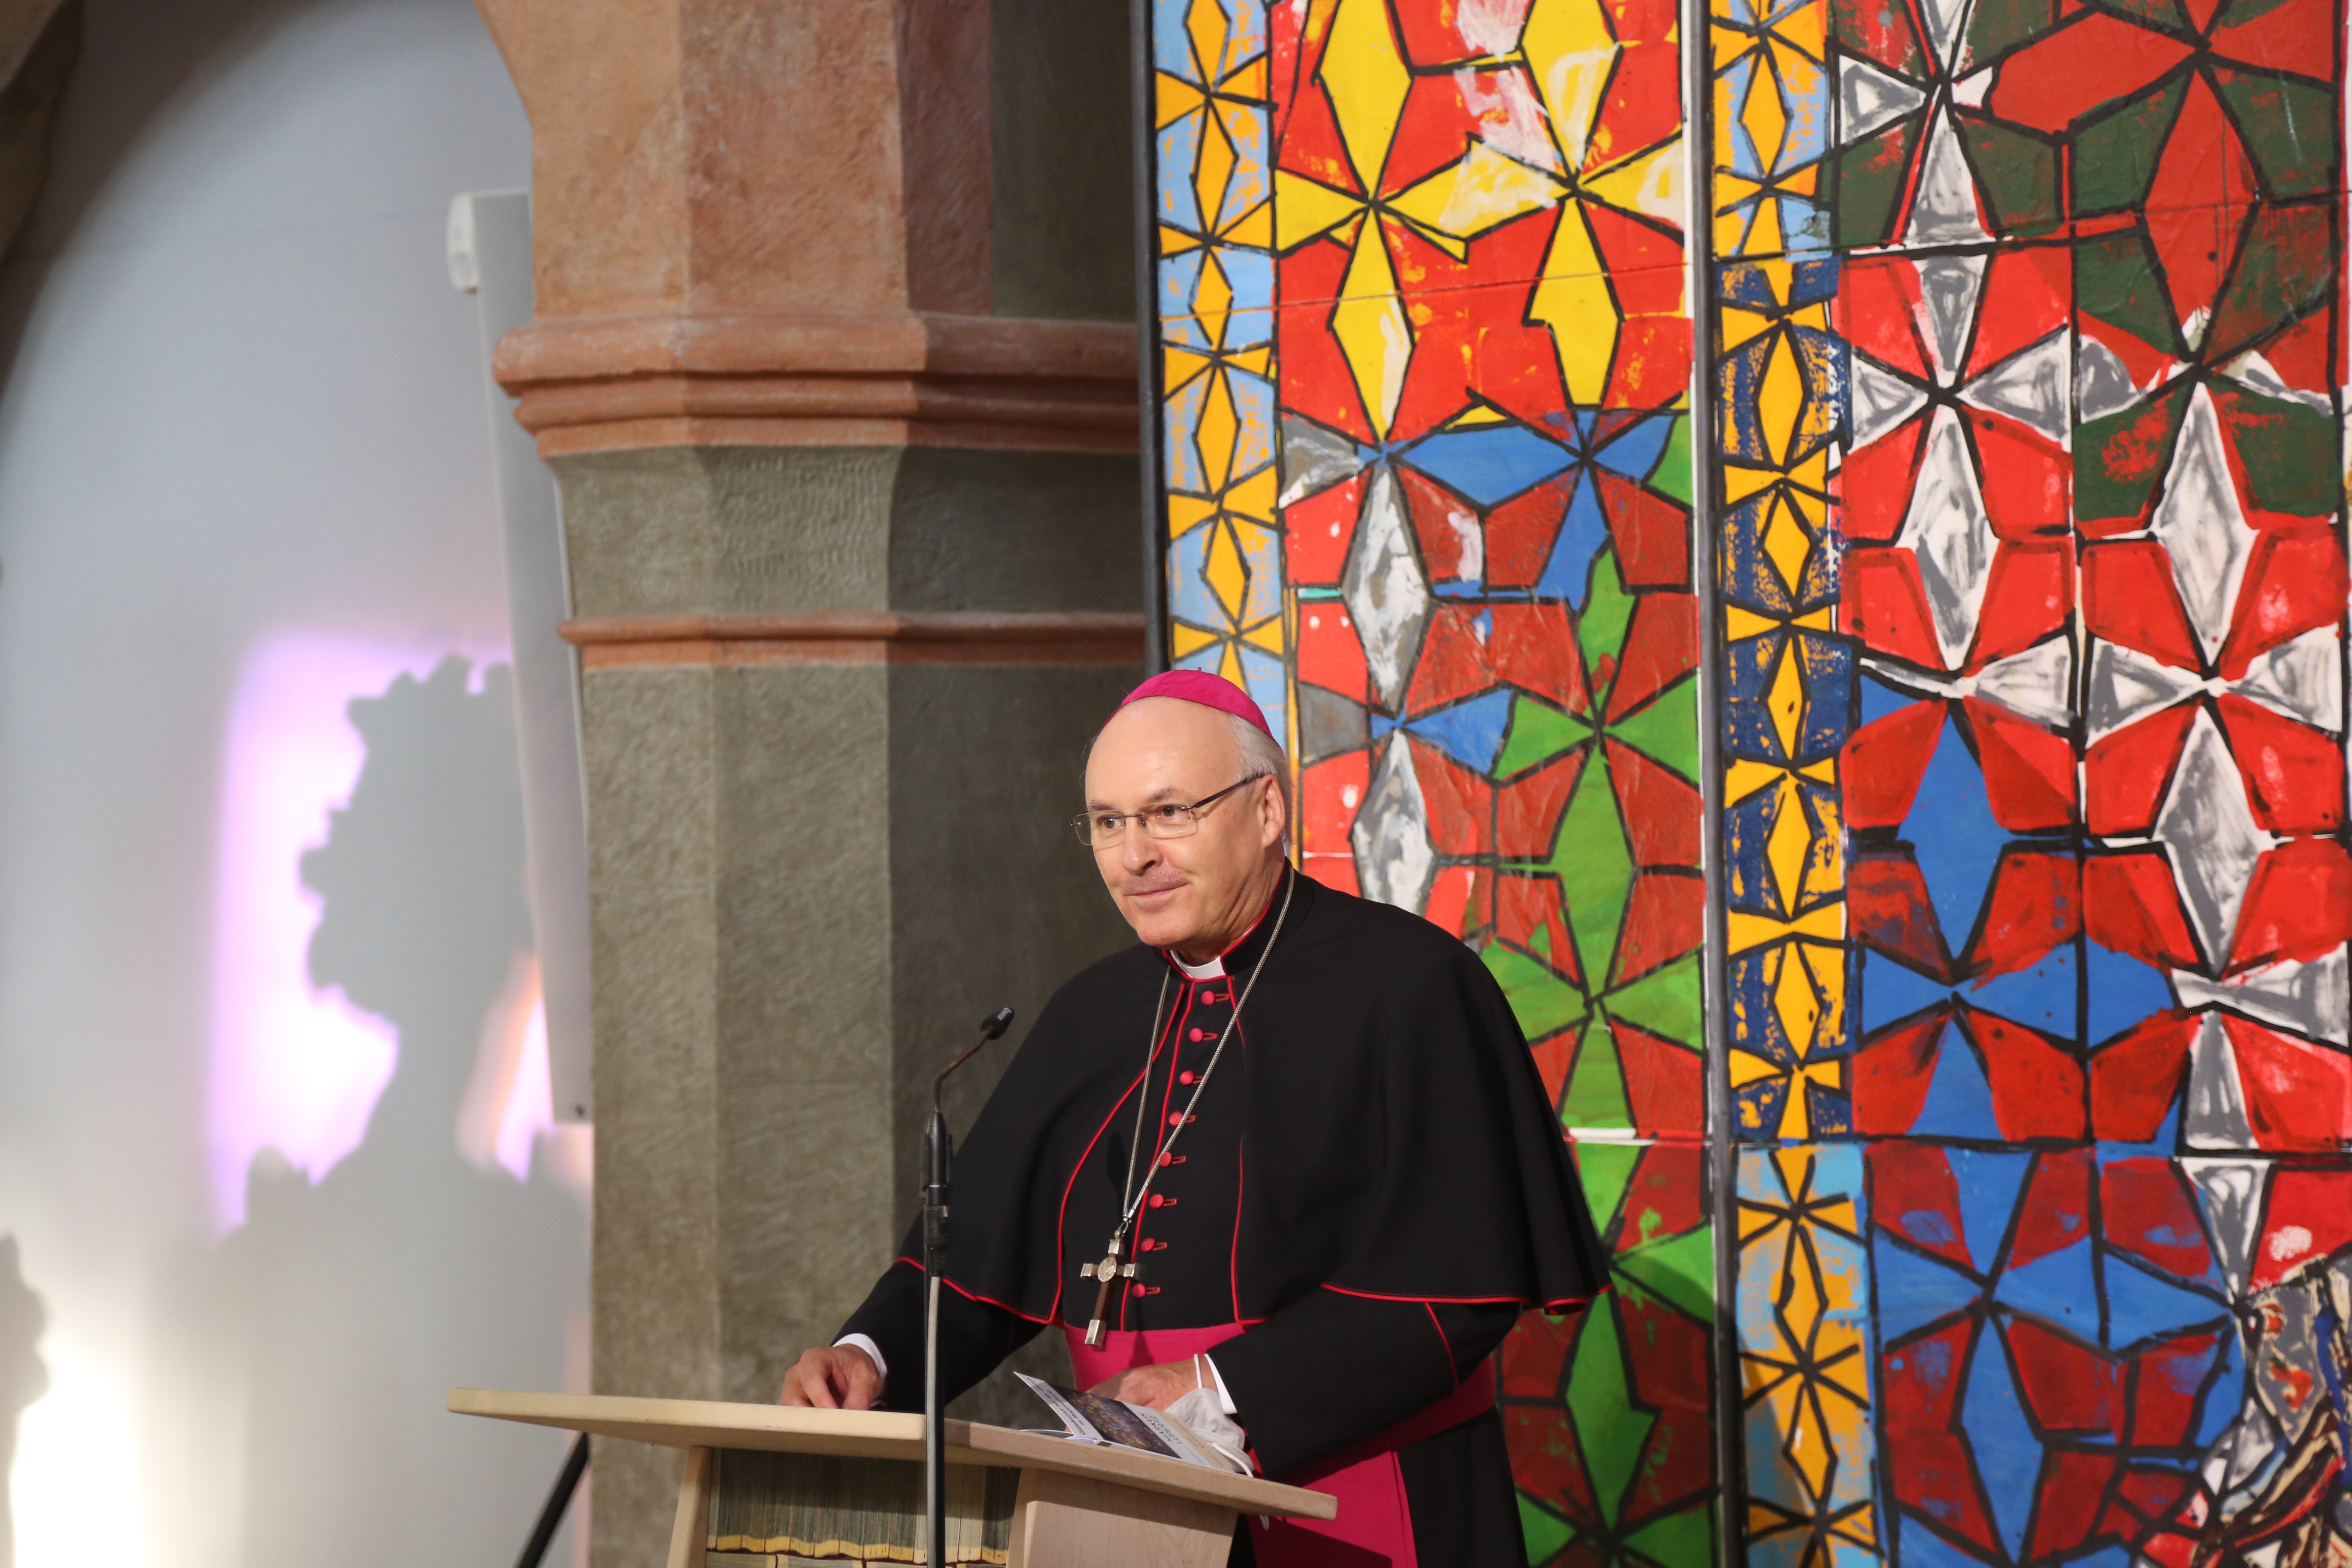 Bischof Rudolf eröffnet die Ausstellung "Der göttliche Funke II".